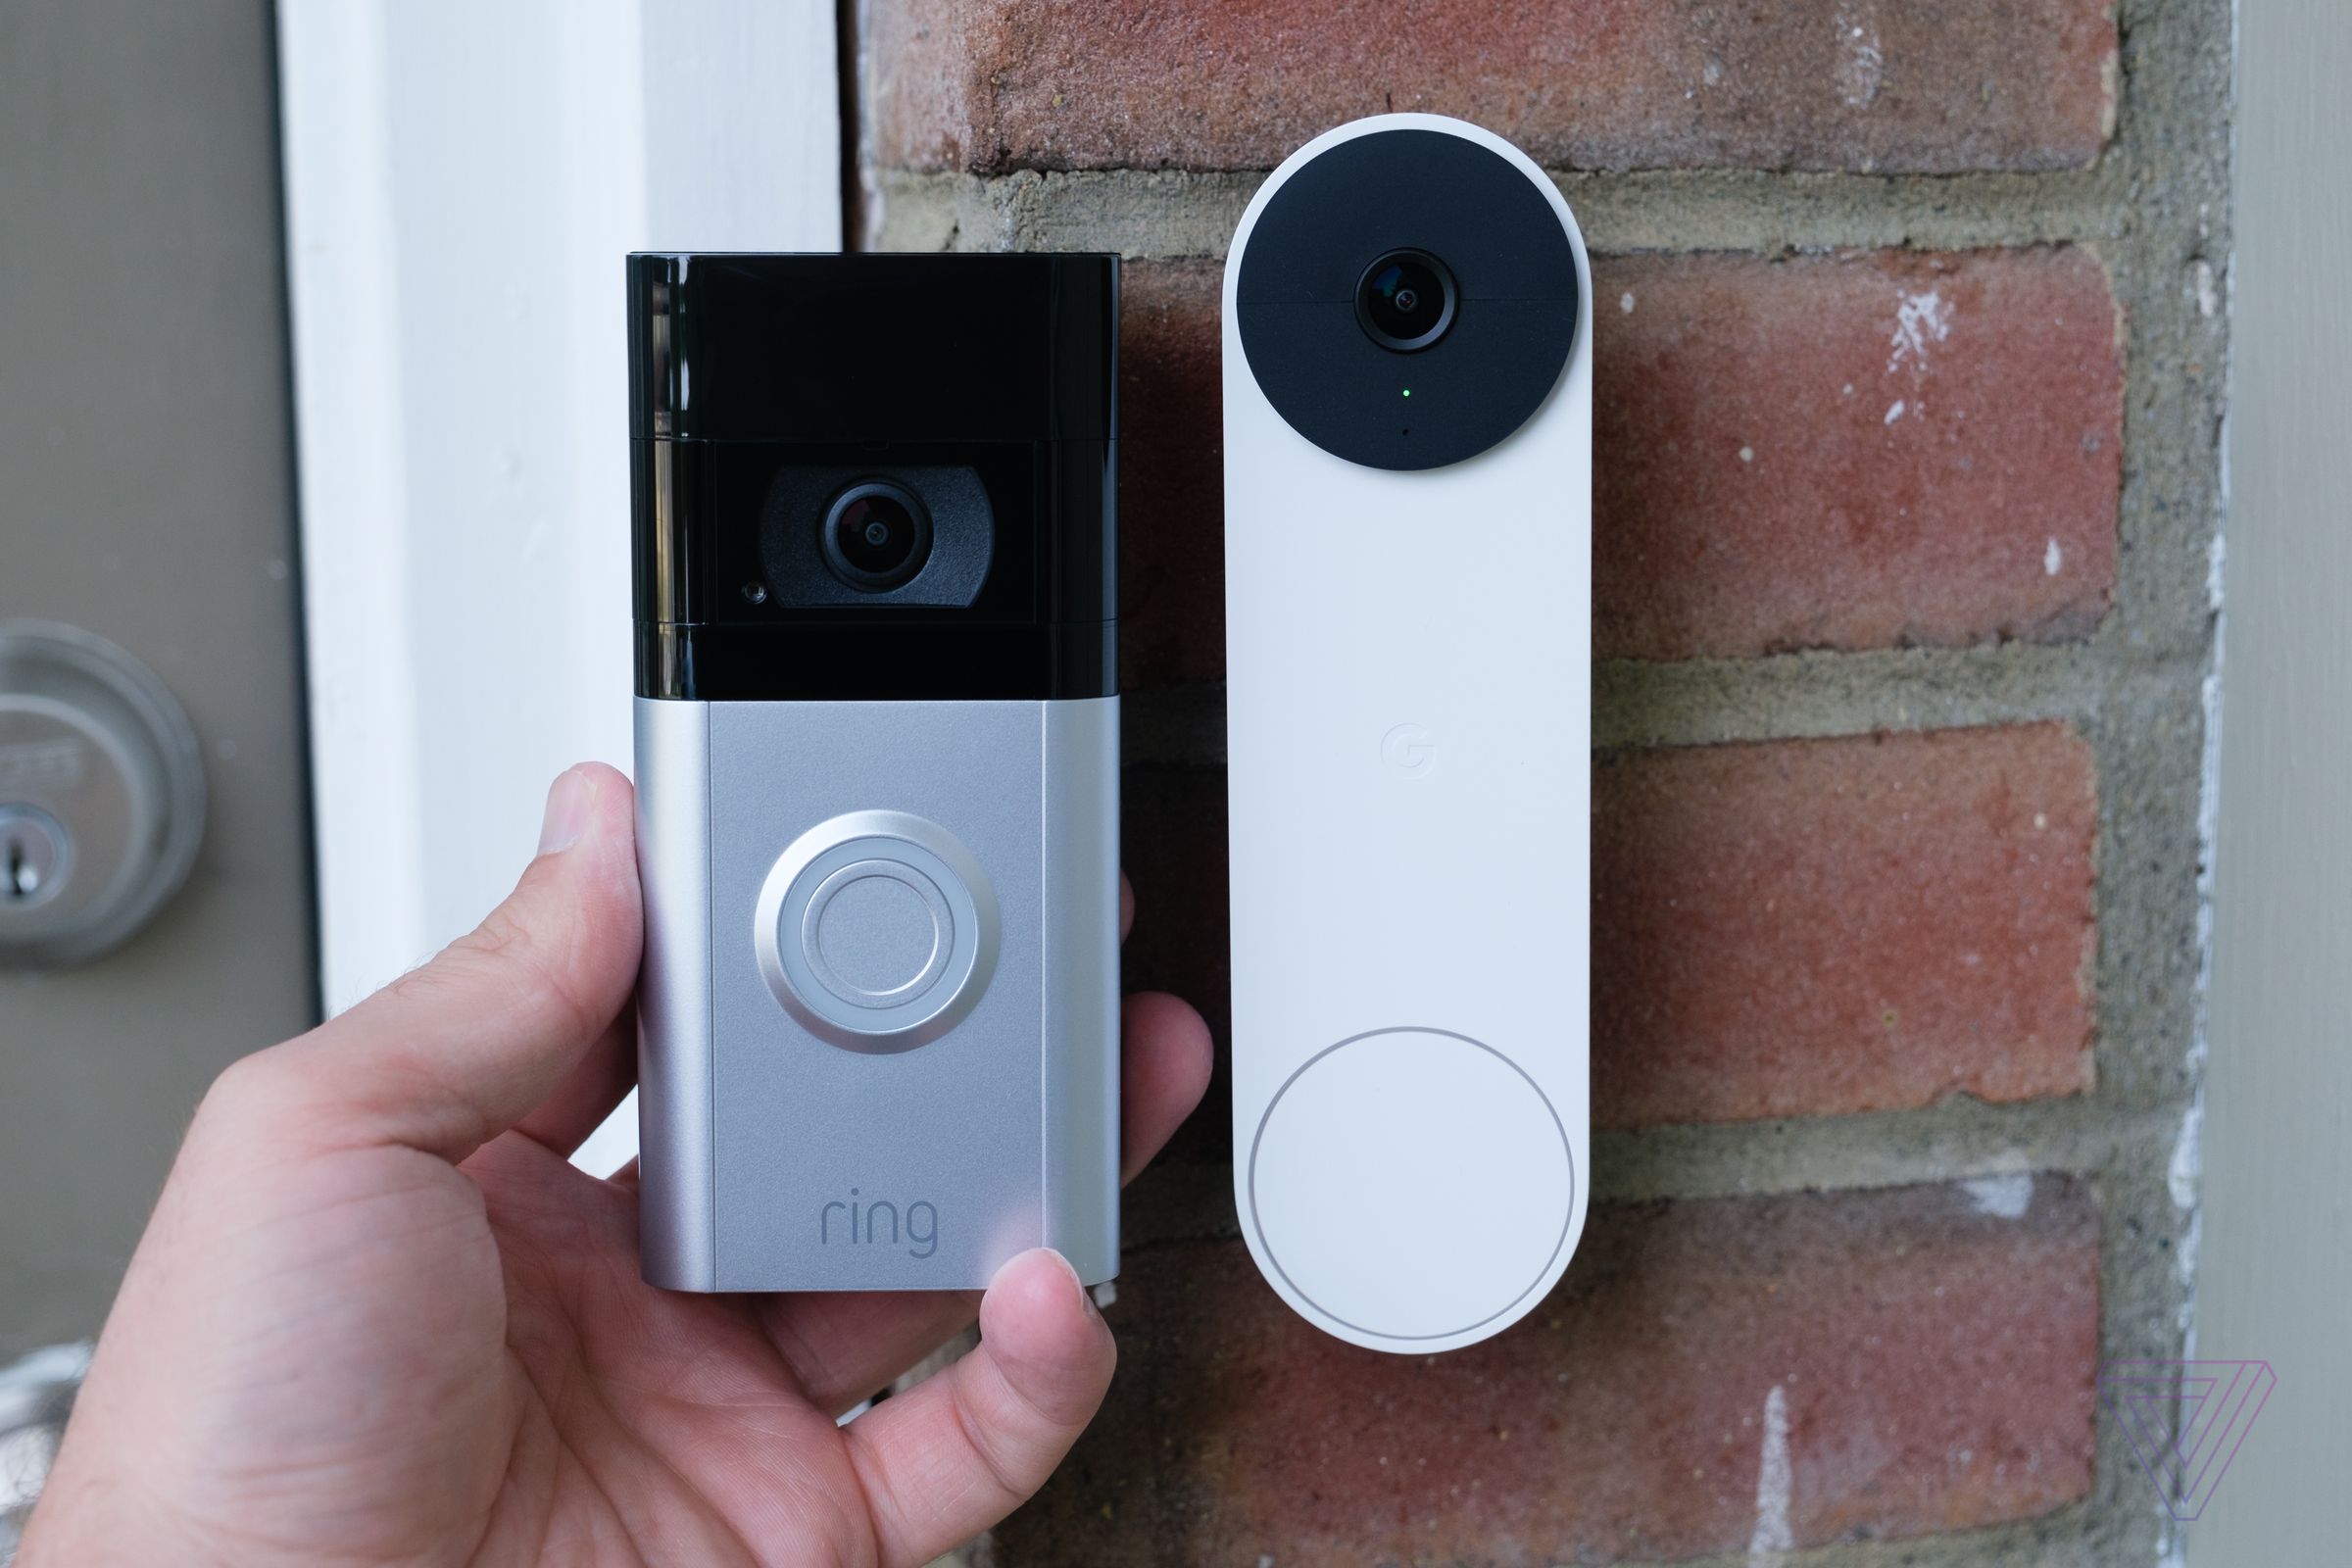 The Nest Doorbell next to the Ring Video Doorbell.